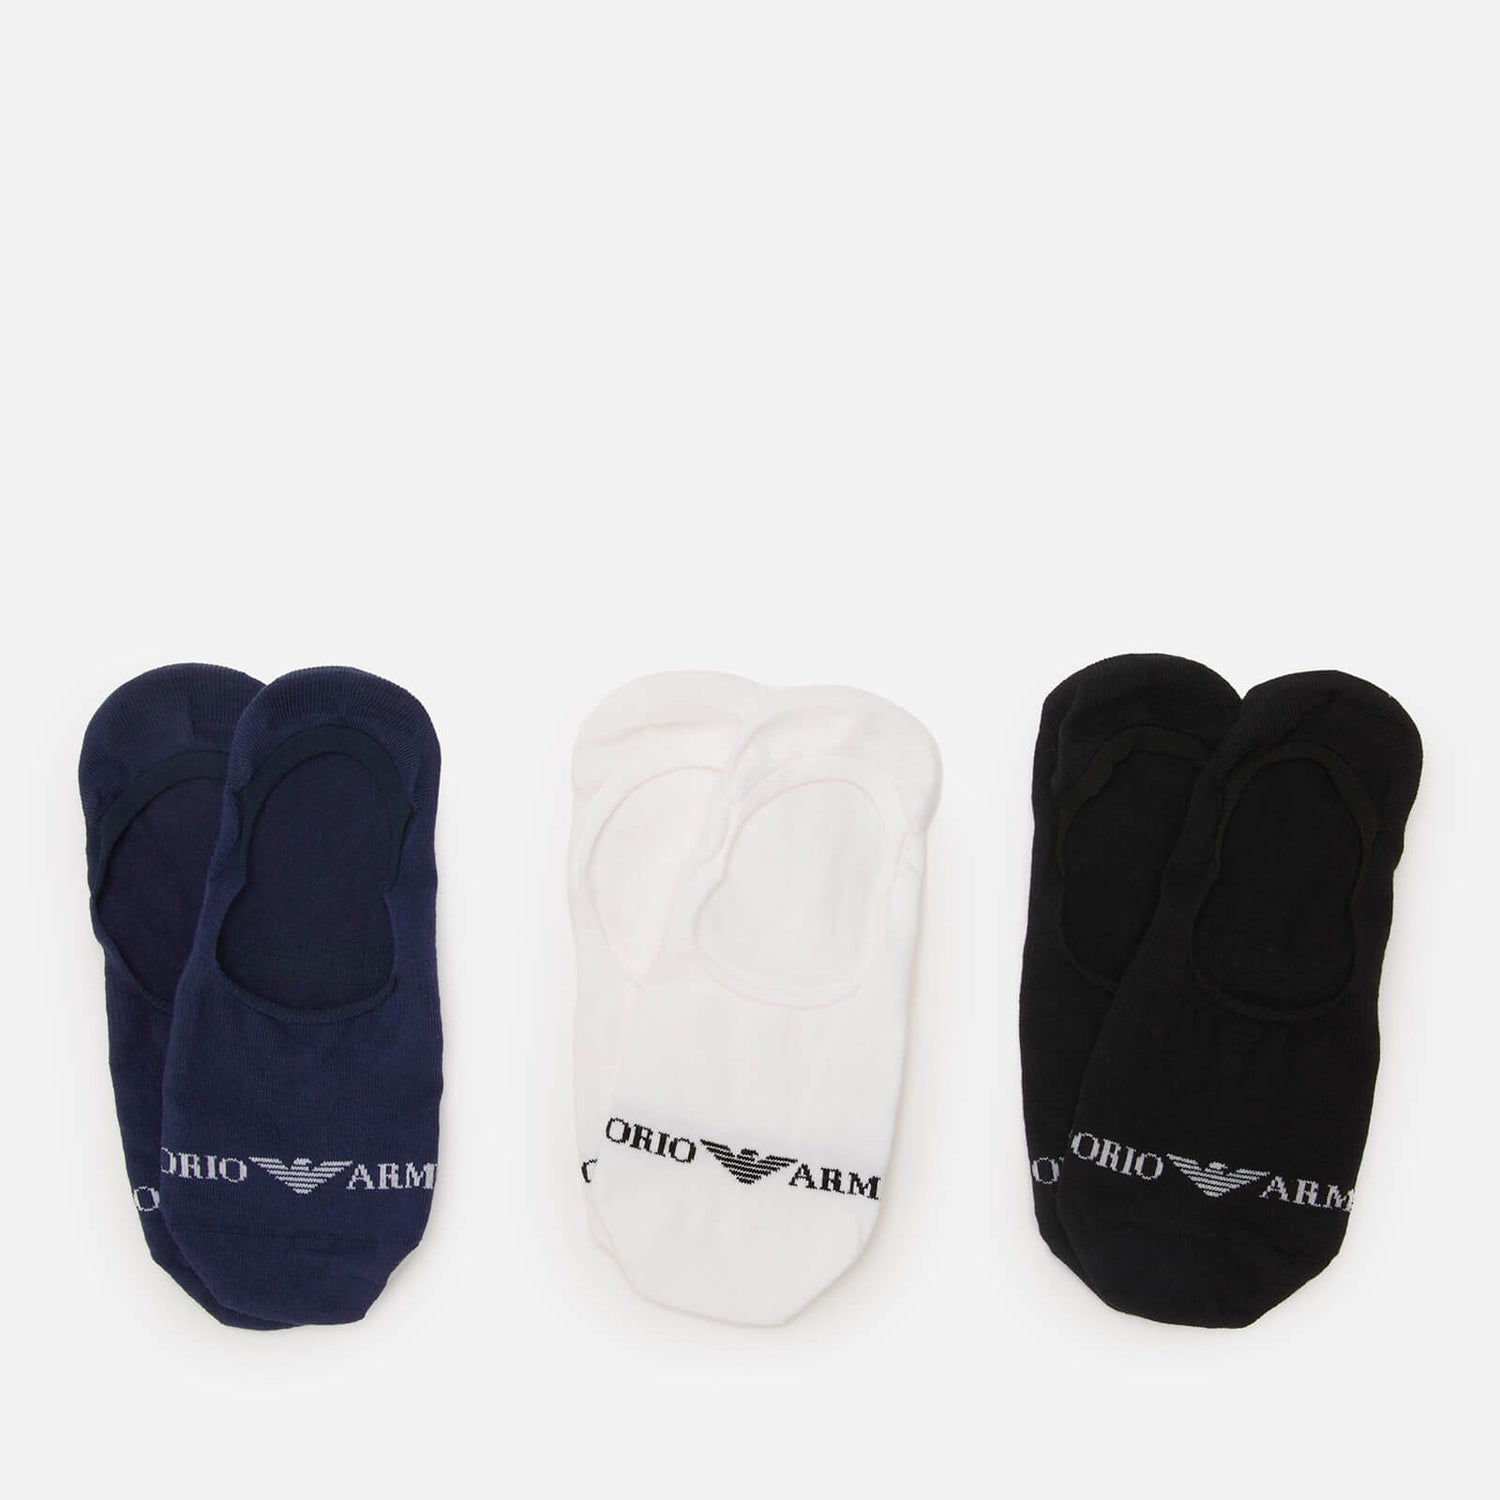 Emporio Armani Men's 3-Pack Invisible Socks - Indigo/Black/White